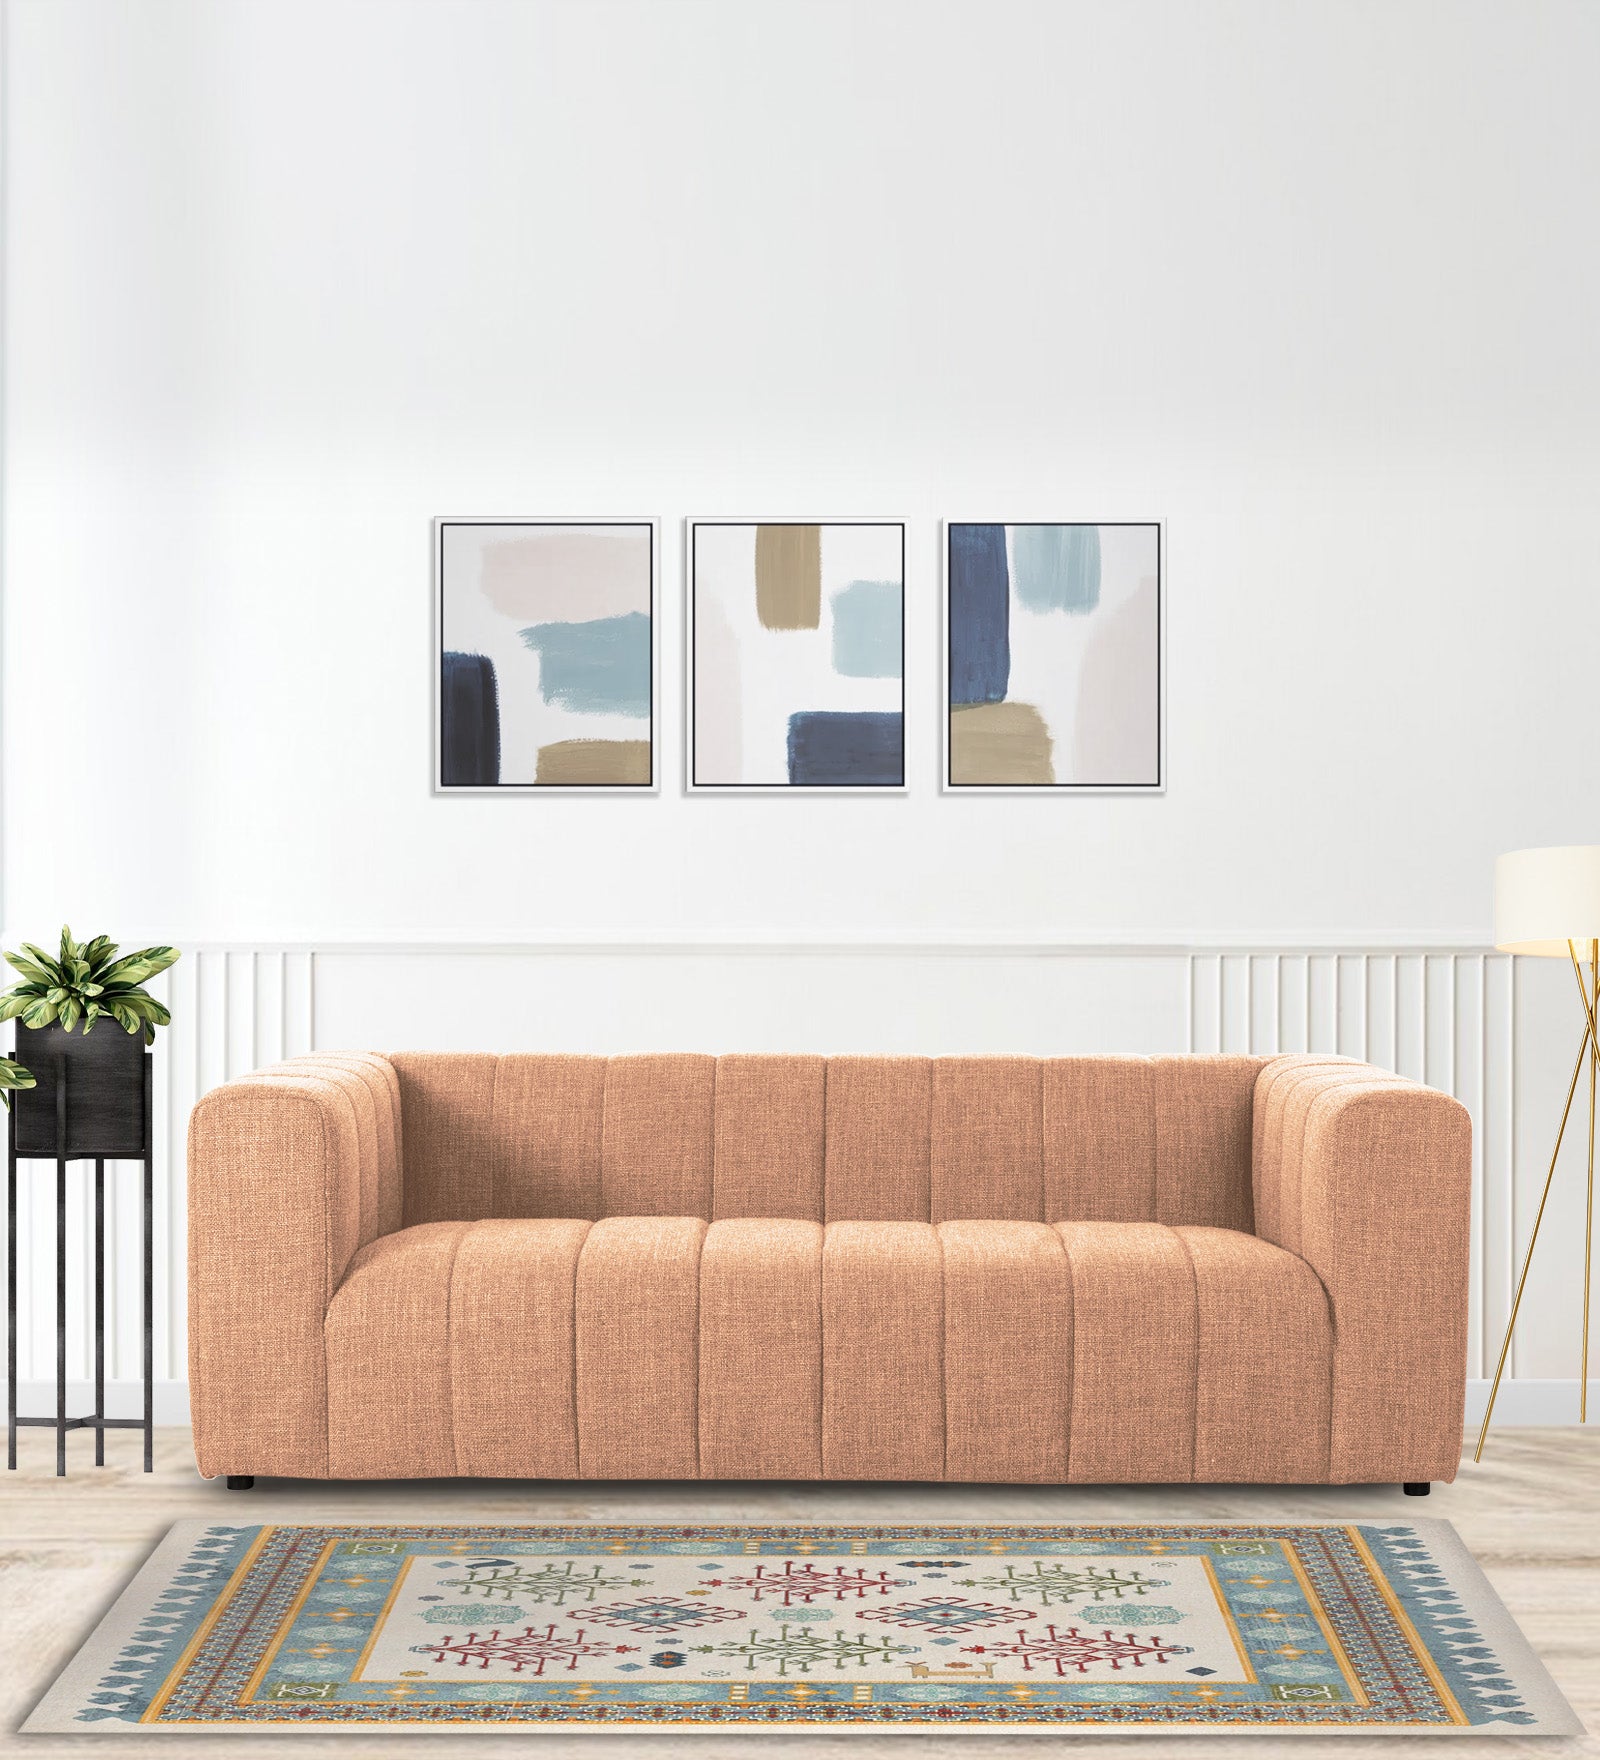 Lara Fabric 3 Seater Sofa in Cosmic Beige Colour